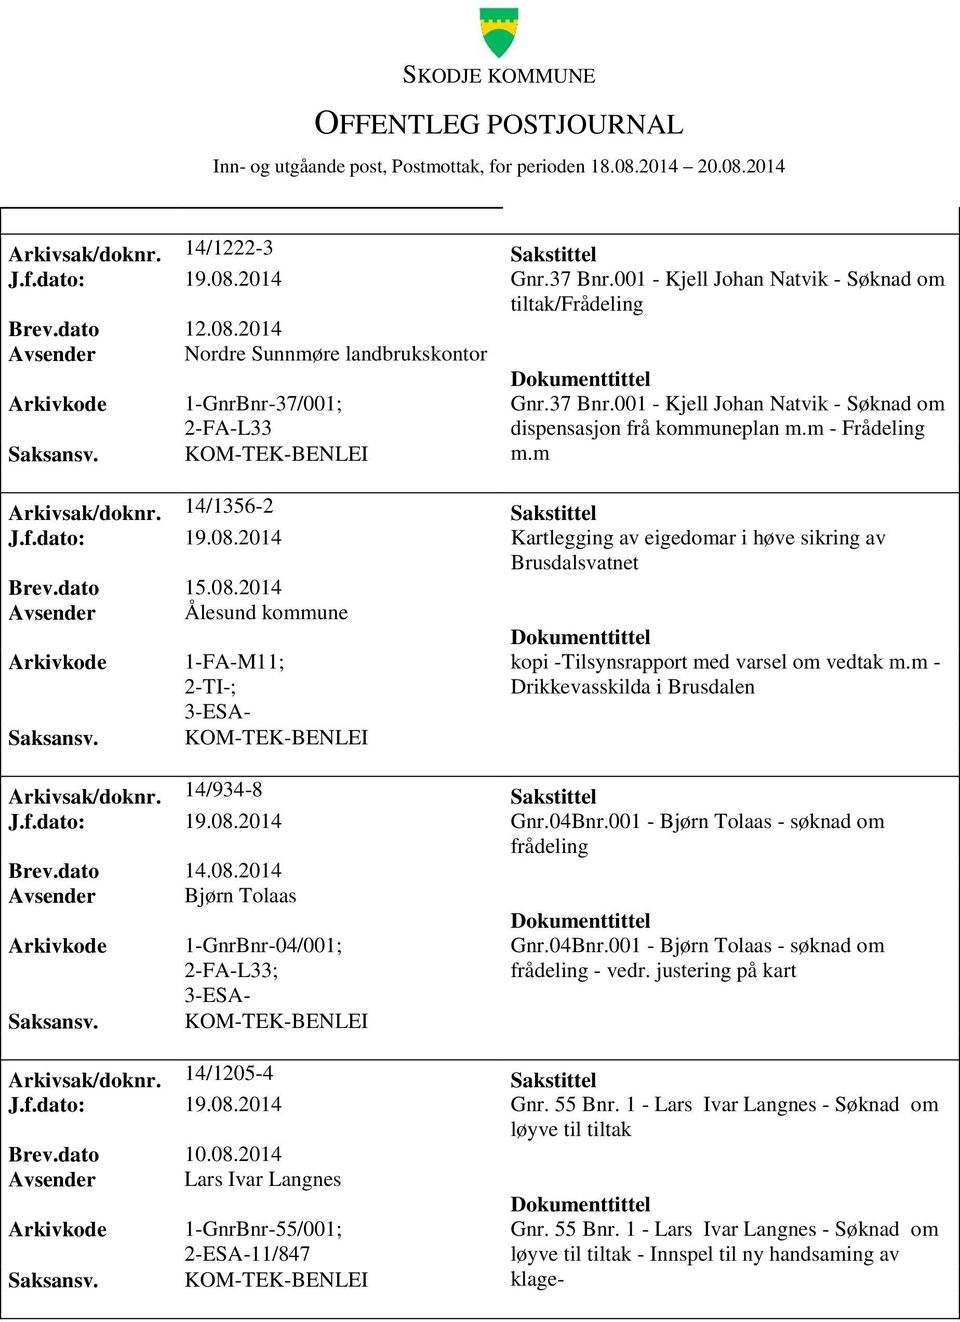 2014 Kartlegging av eigedomar i høve sikring av Brusdalsvatnet Brev.dato 15.08.2014 Avsender Ålesund kommune 1-FA-M11; 2-TI-; kopi -Tilsynsrapport med varsel om vedtak m.